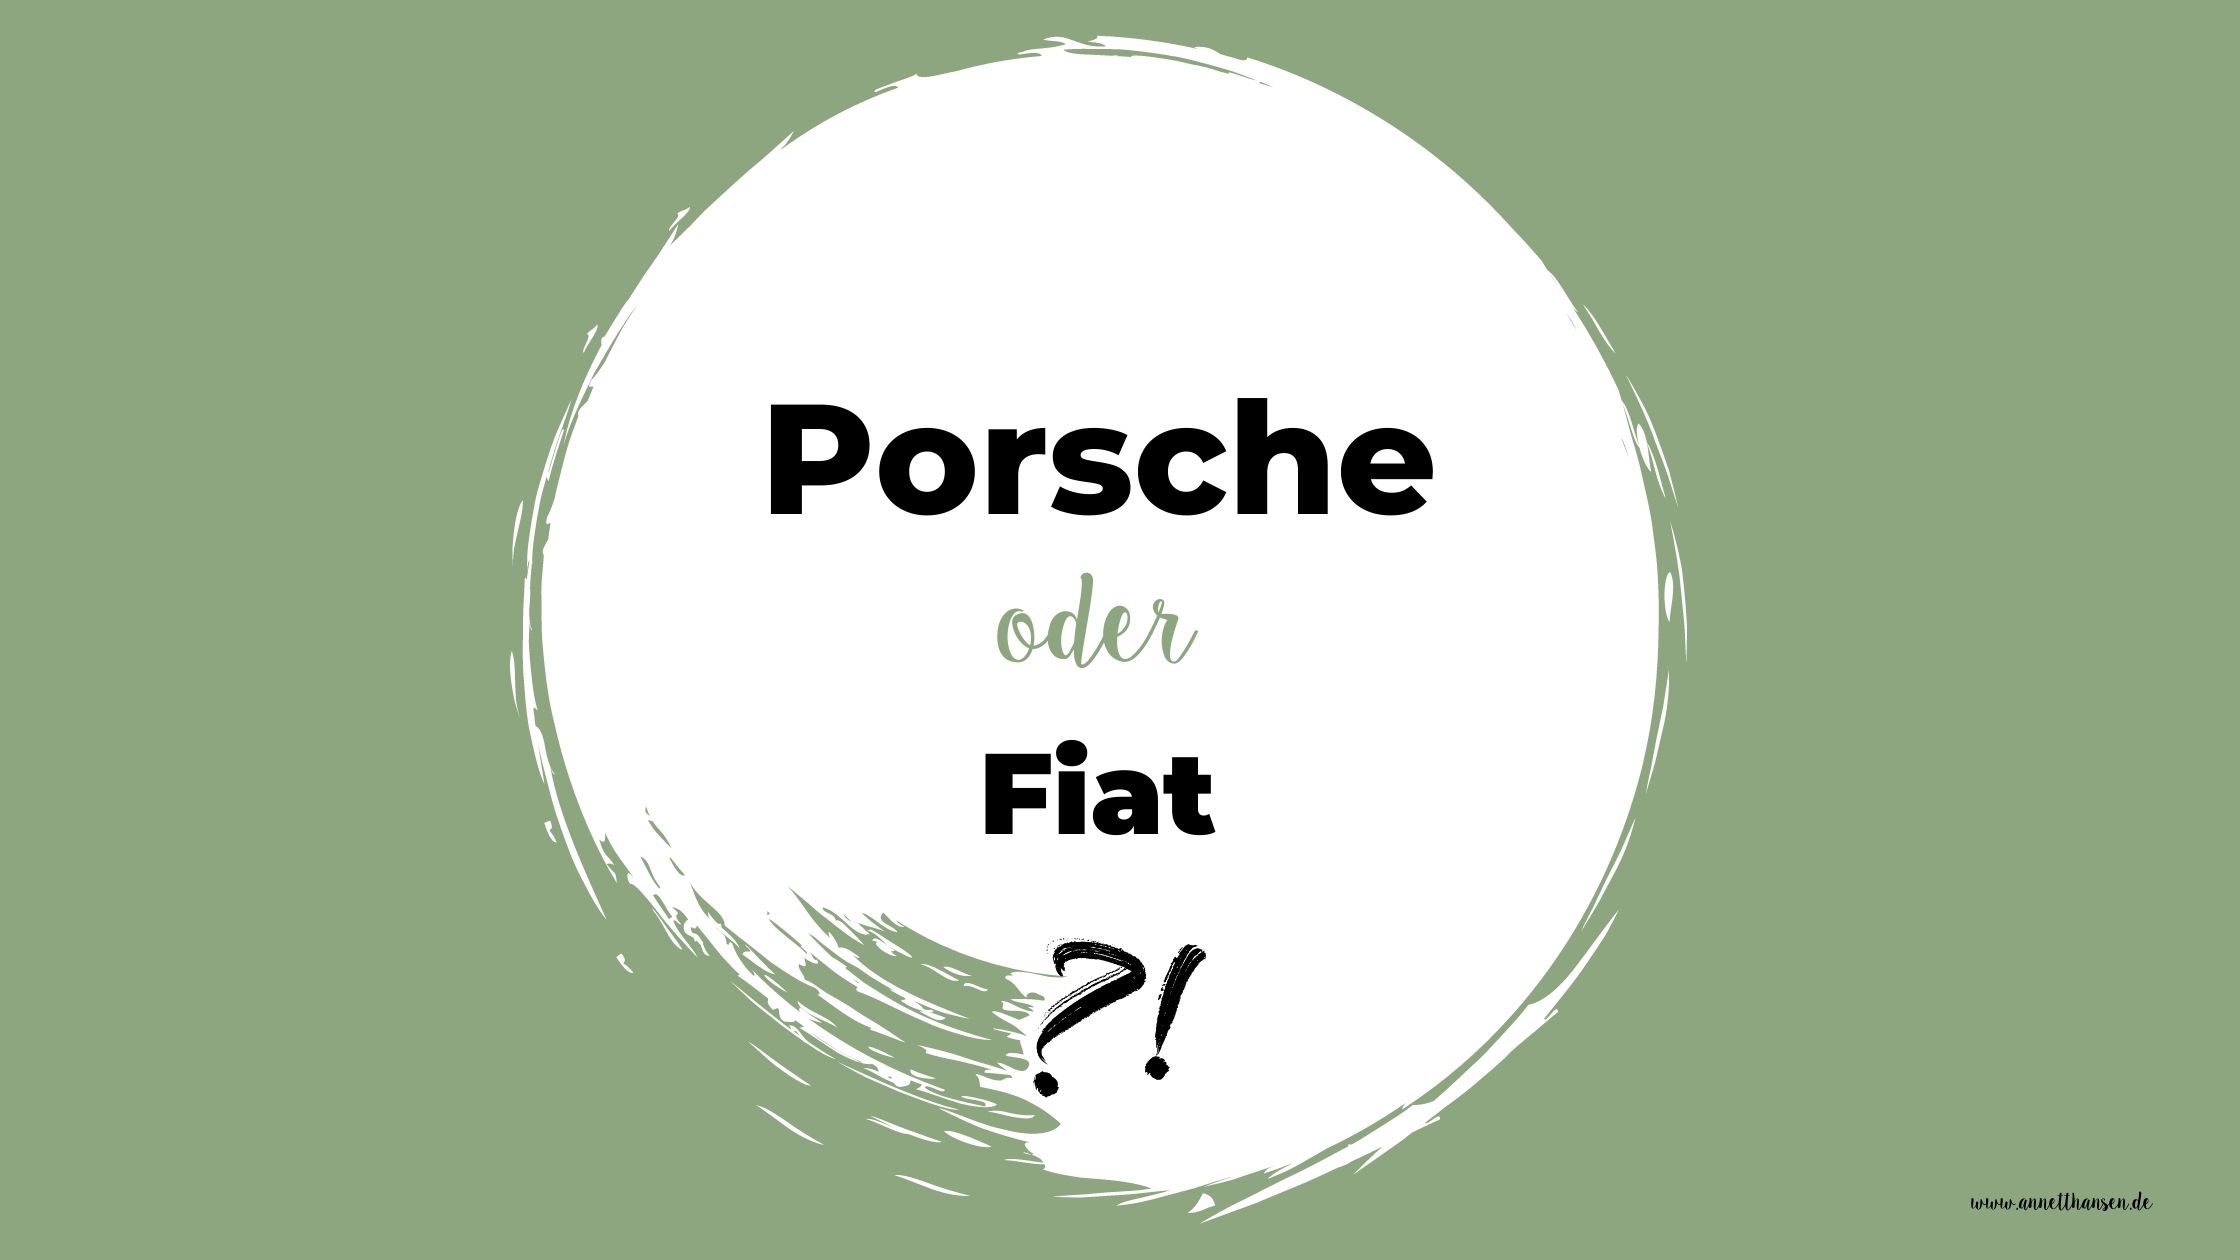 Porsche oder Fiat?